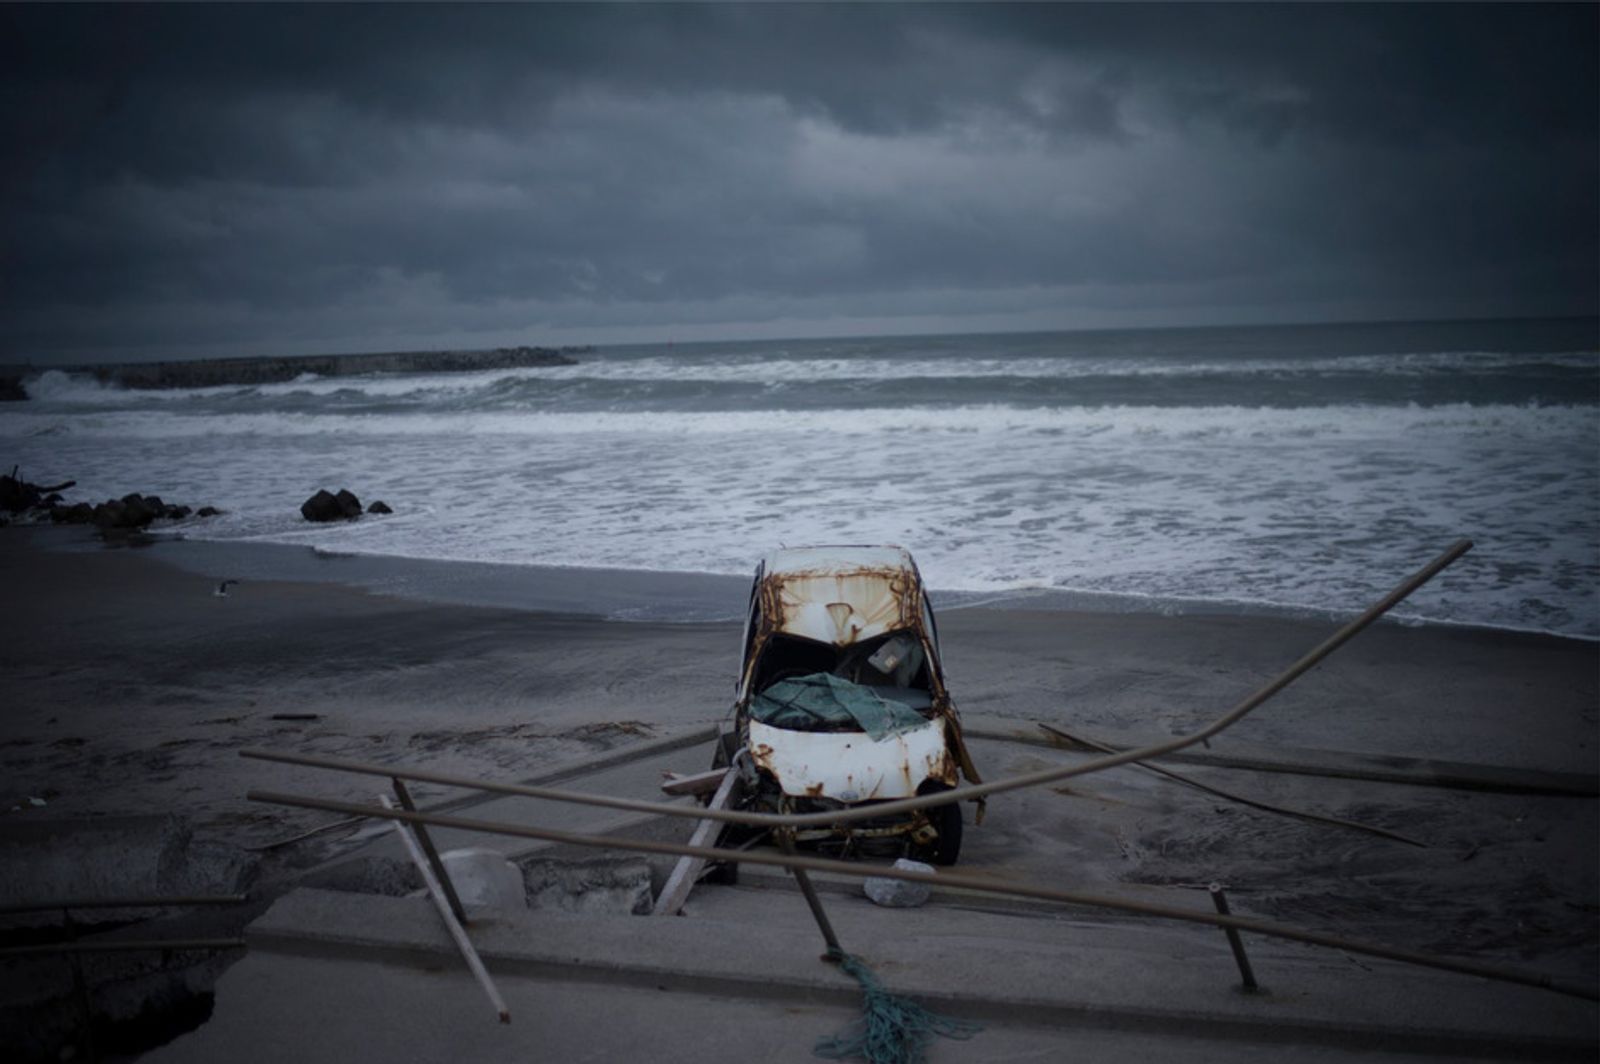 © Soichiro Koriyama - Image from the Fukushima “Black rain” photography project